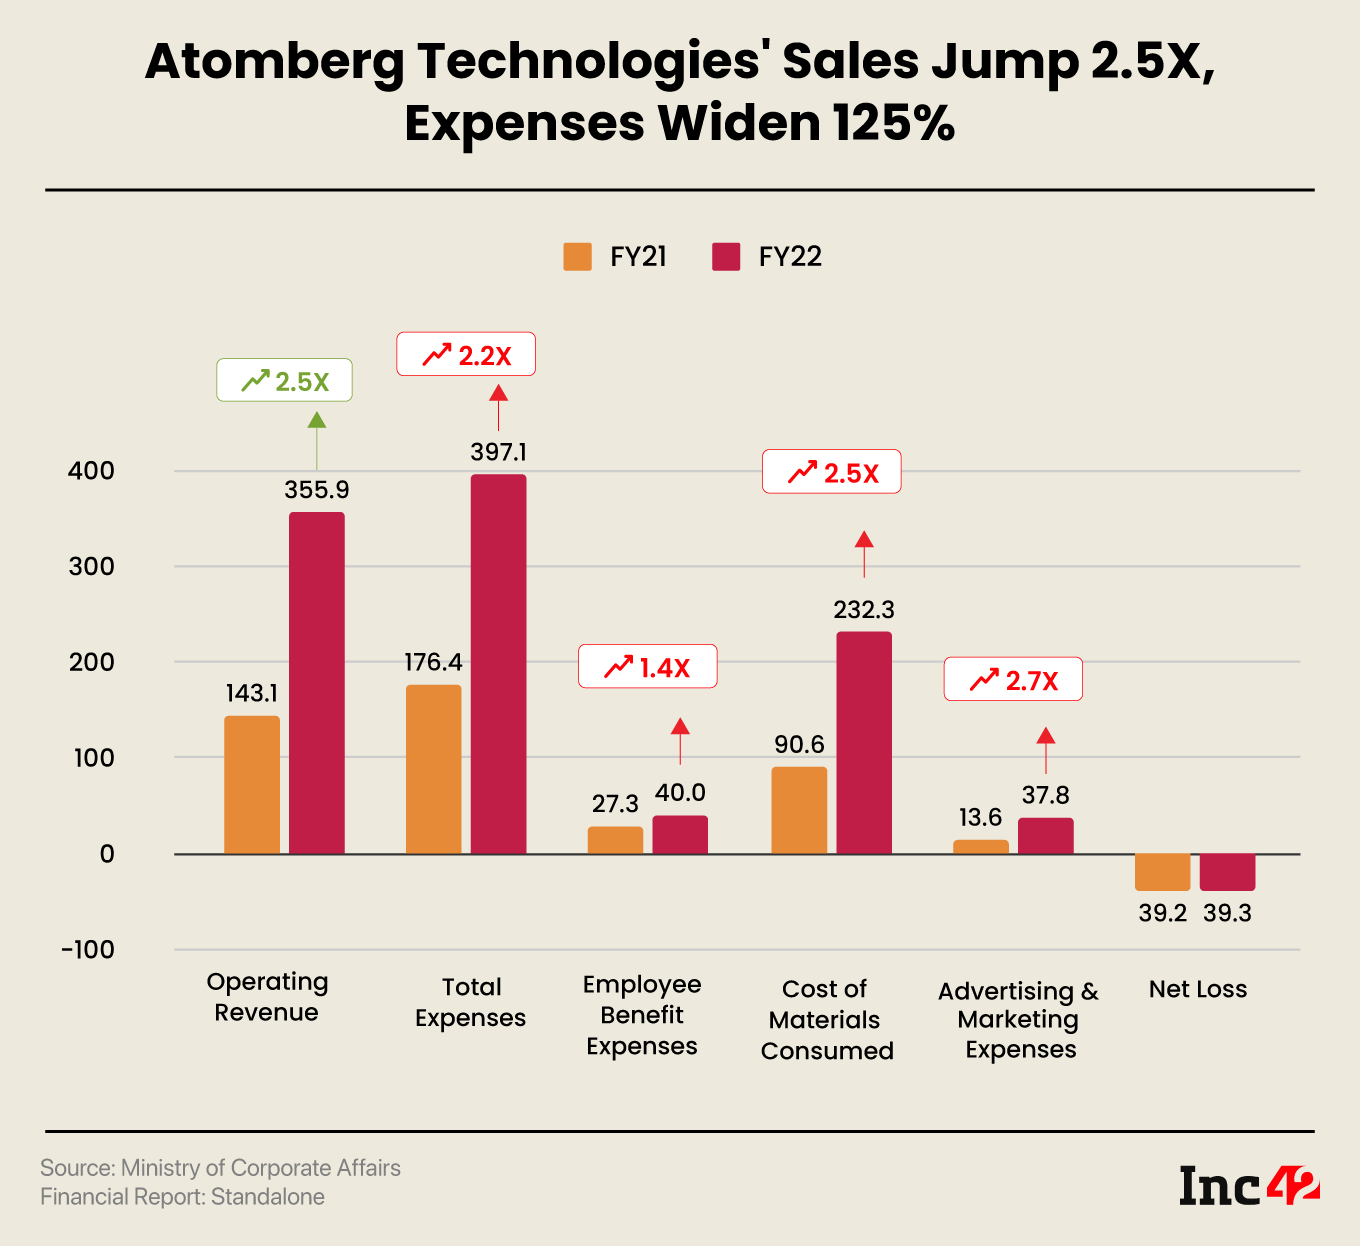 Atomberg Technologies Loss Flat At INR 39.3 Cr